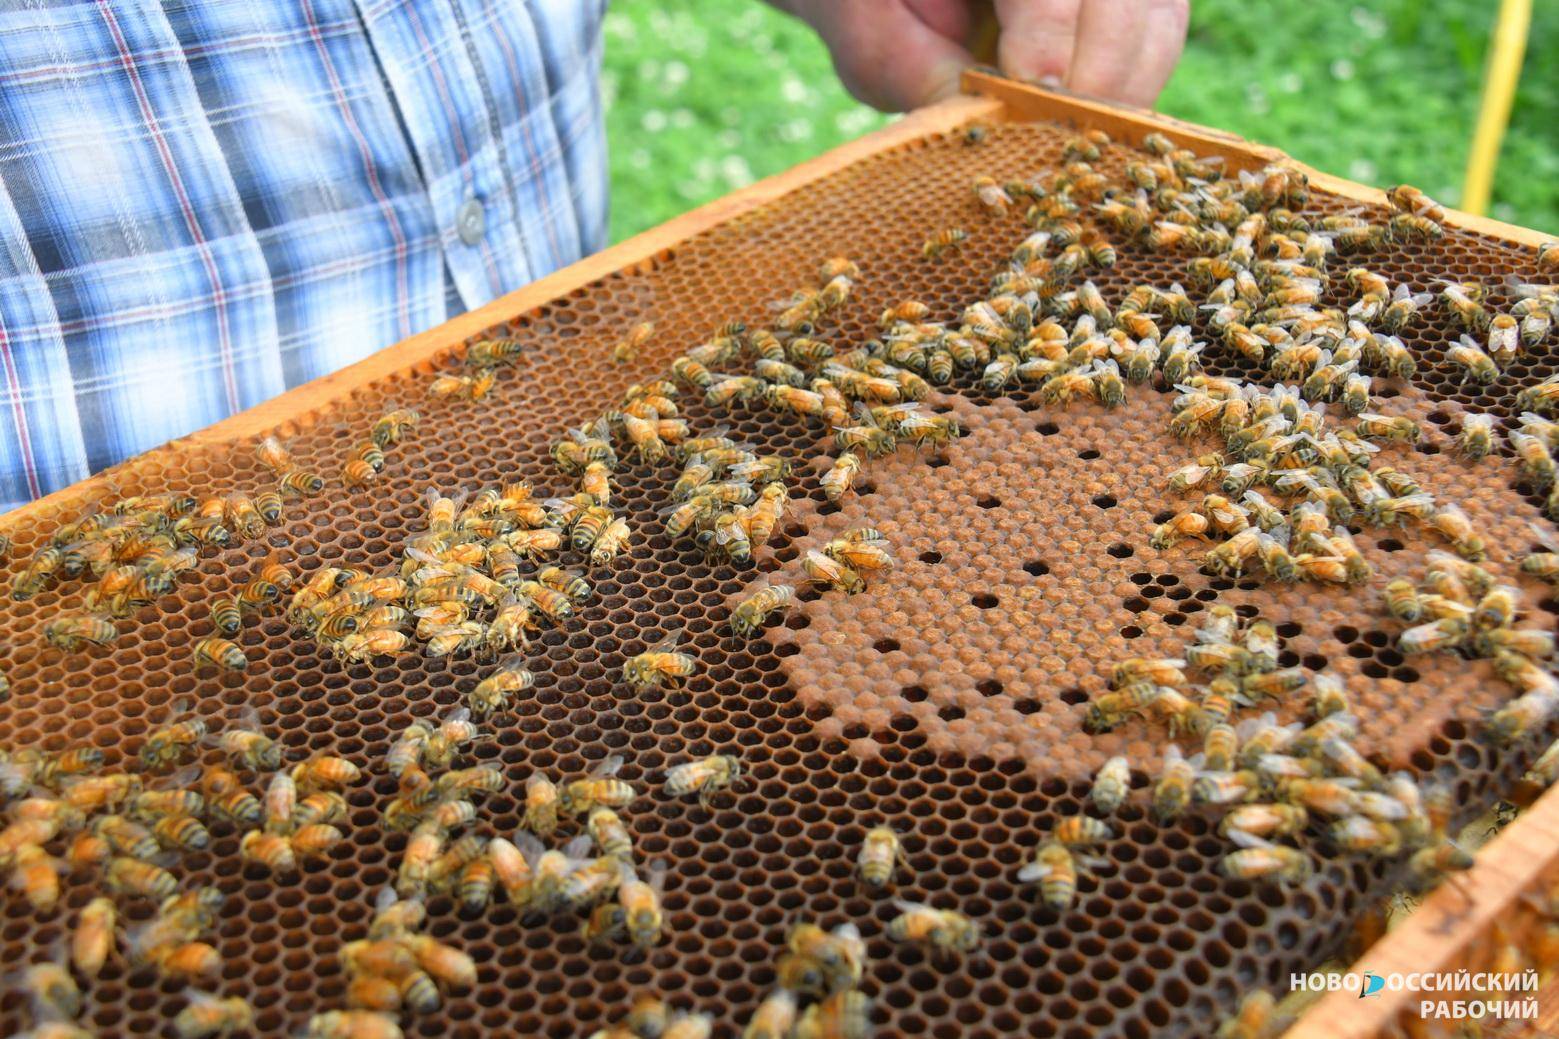 Правительство может помочь выжить новороссийским пчёлам, которым мешают жить вышки сотовой связи